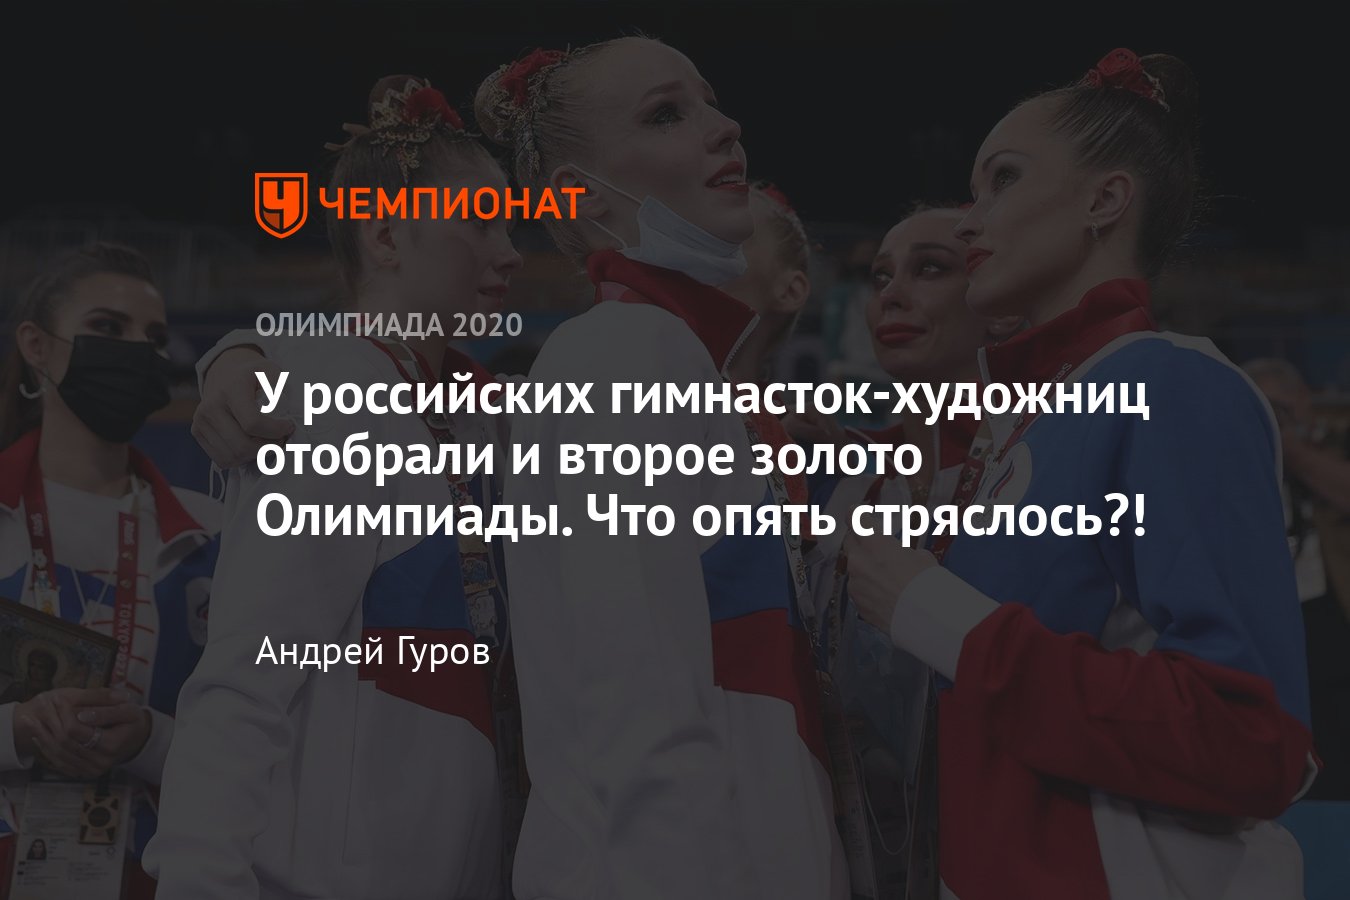 Олимпиада 2021 в Токио, художественная гимнастика (группы), 8 августа 2021  — результаты, Россия — вторая - Чемпионат